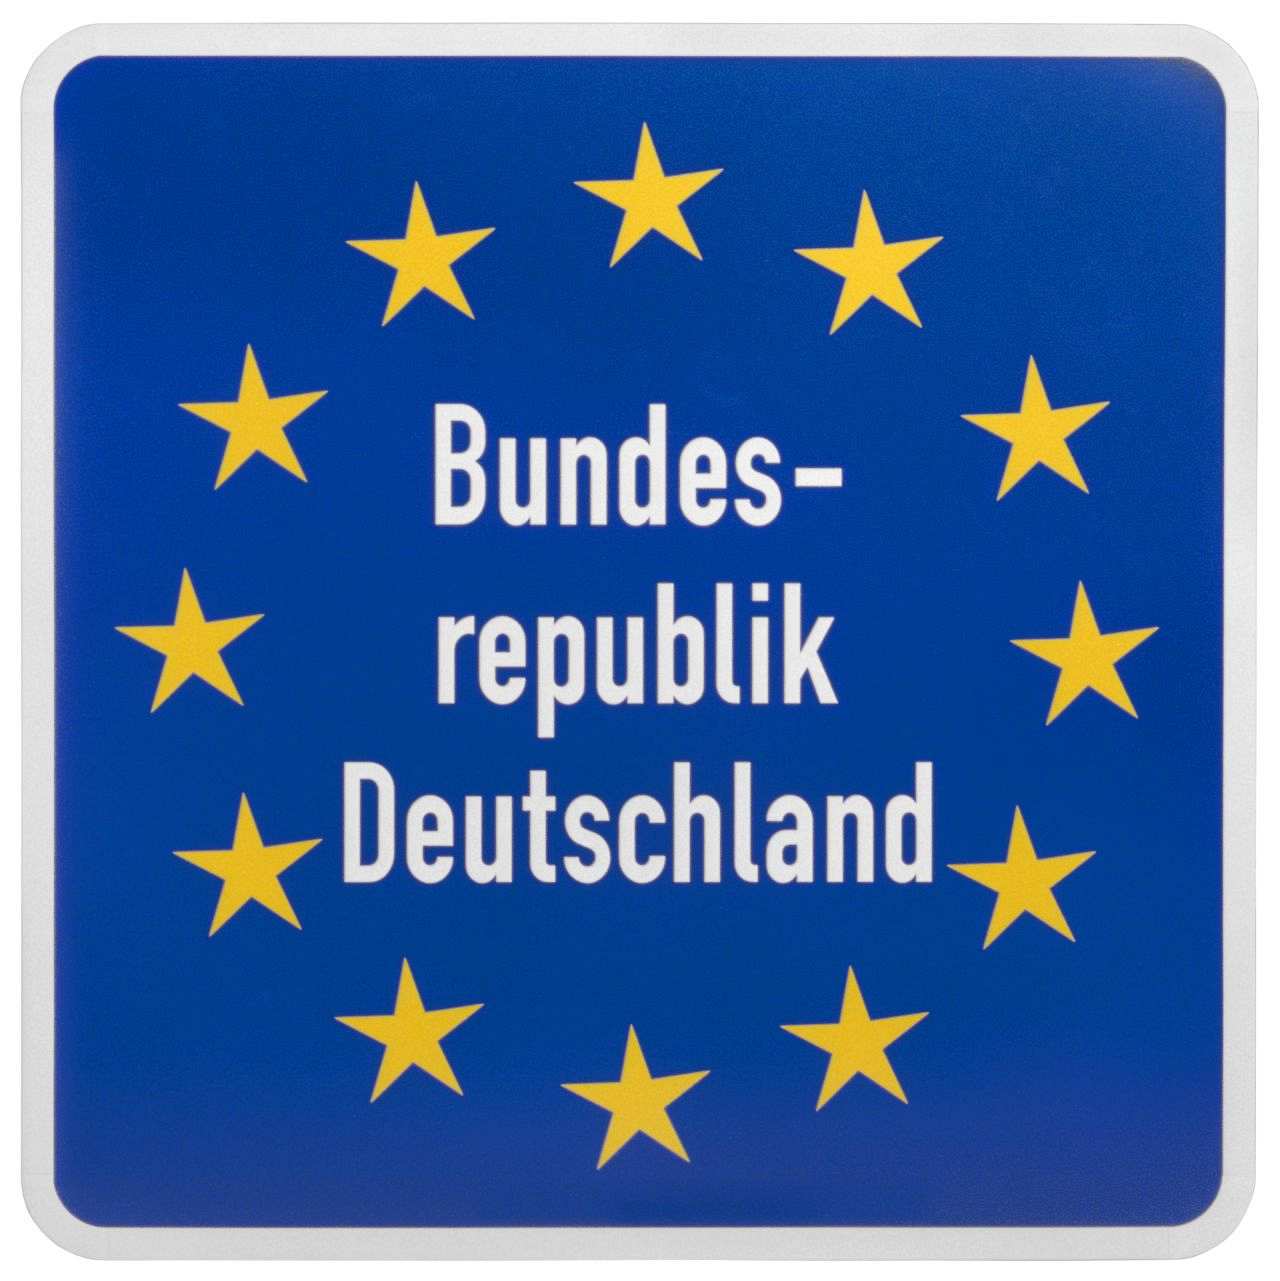 Das blaugrundige Schild hat einen weißen Rand und gerundete Ecken. Im Mittelfeld steht: Bundesrepublik Deutschland (weiß), umgeben von einem Ring aus zwölf gelben Sternen.